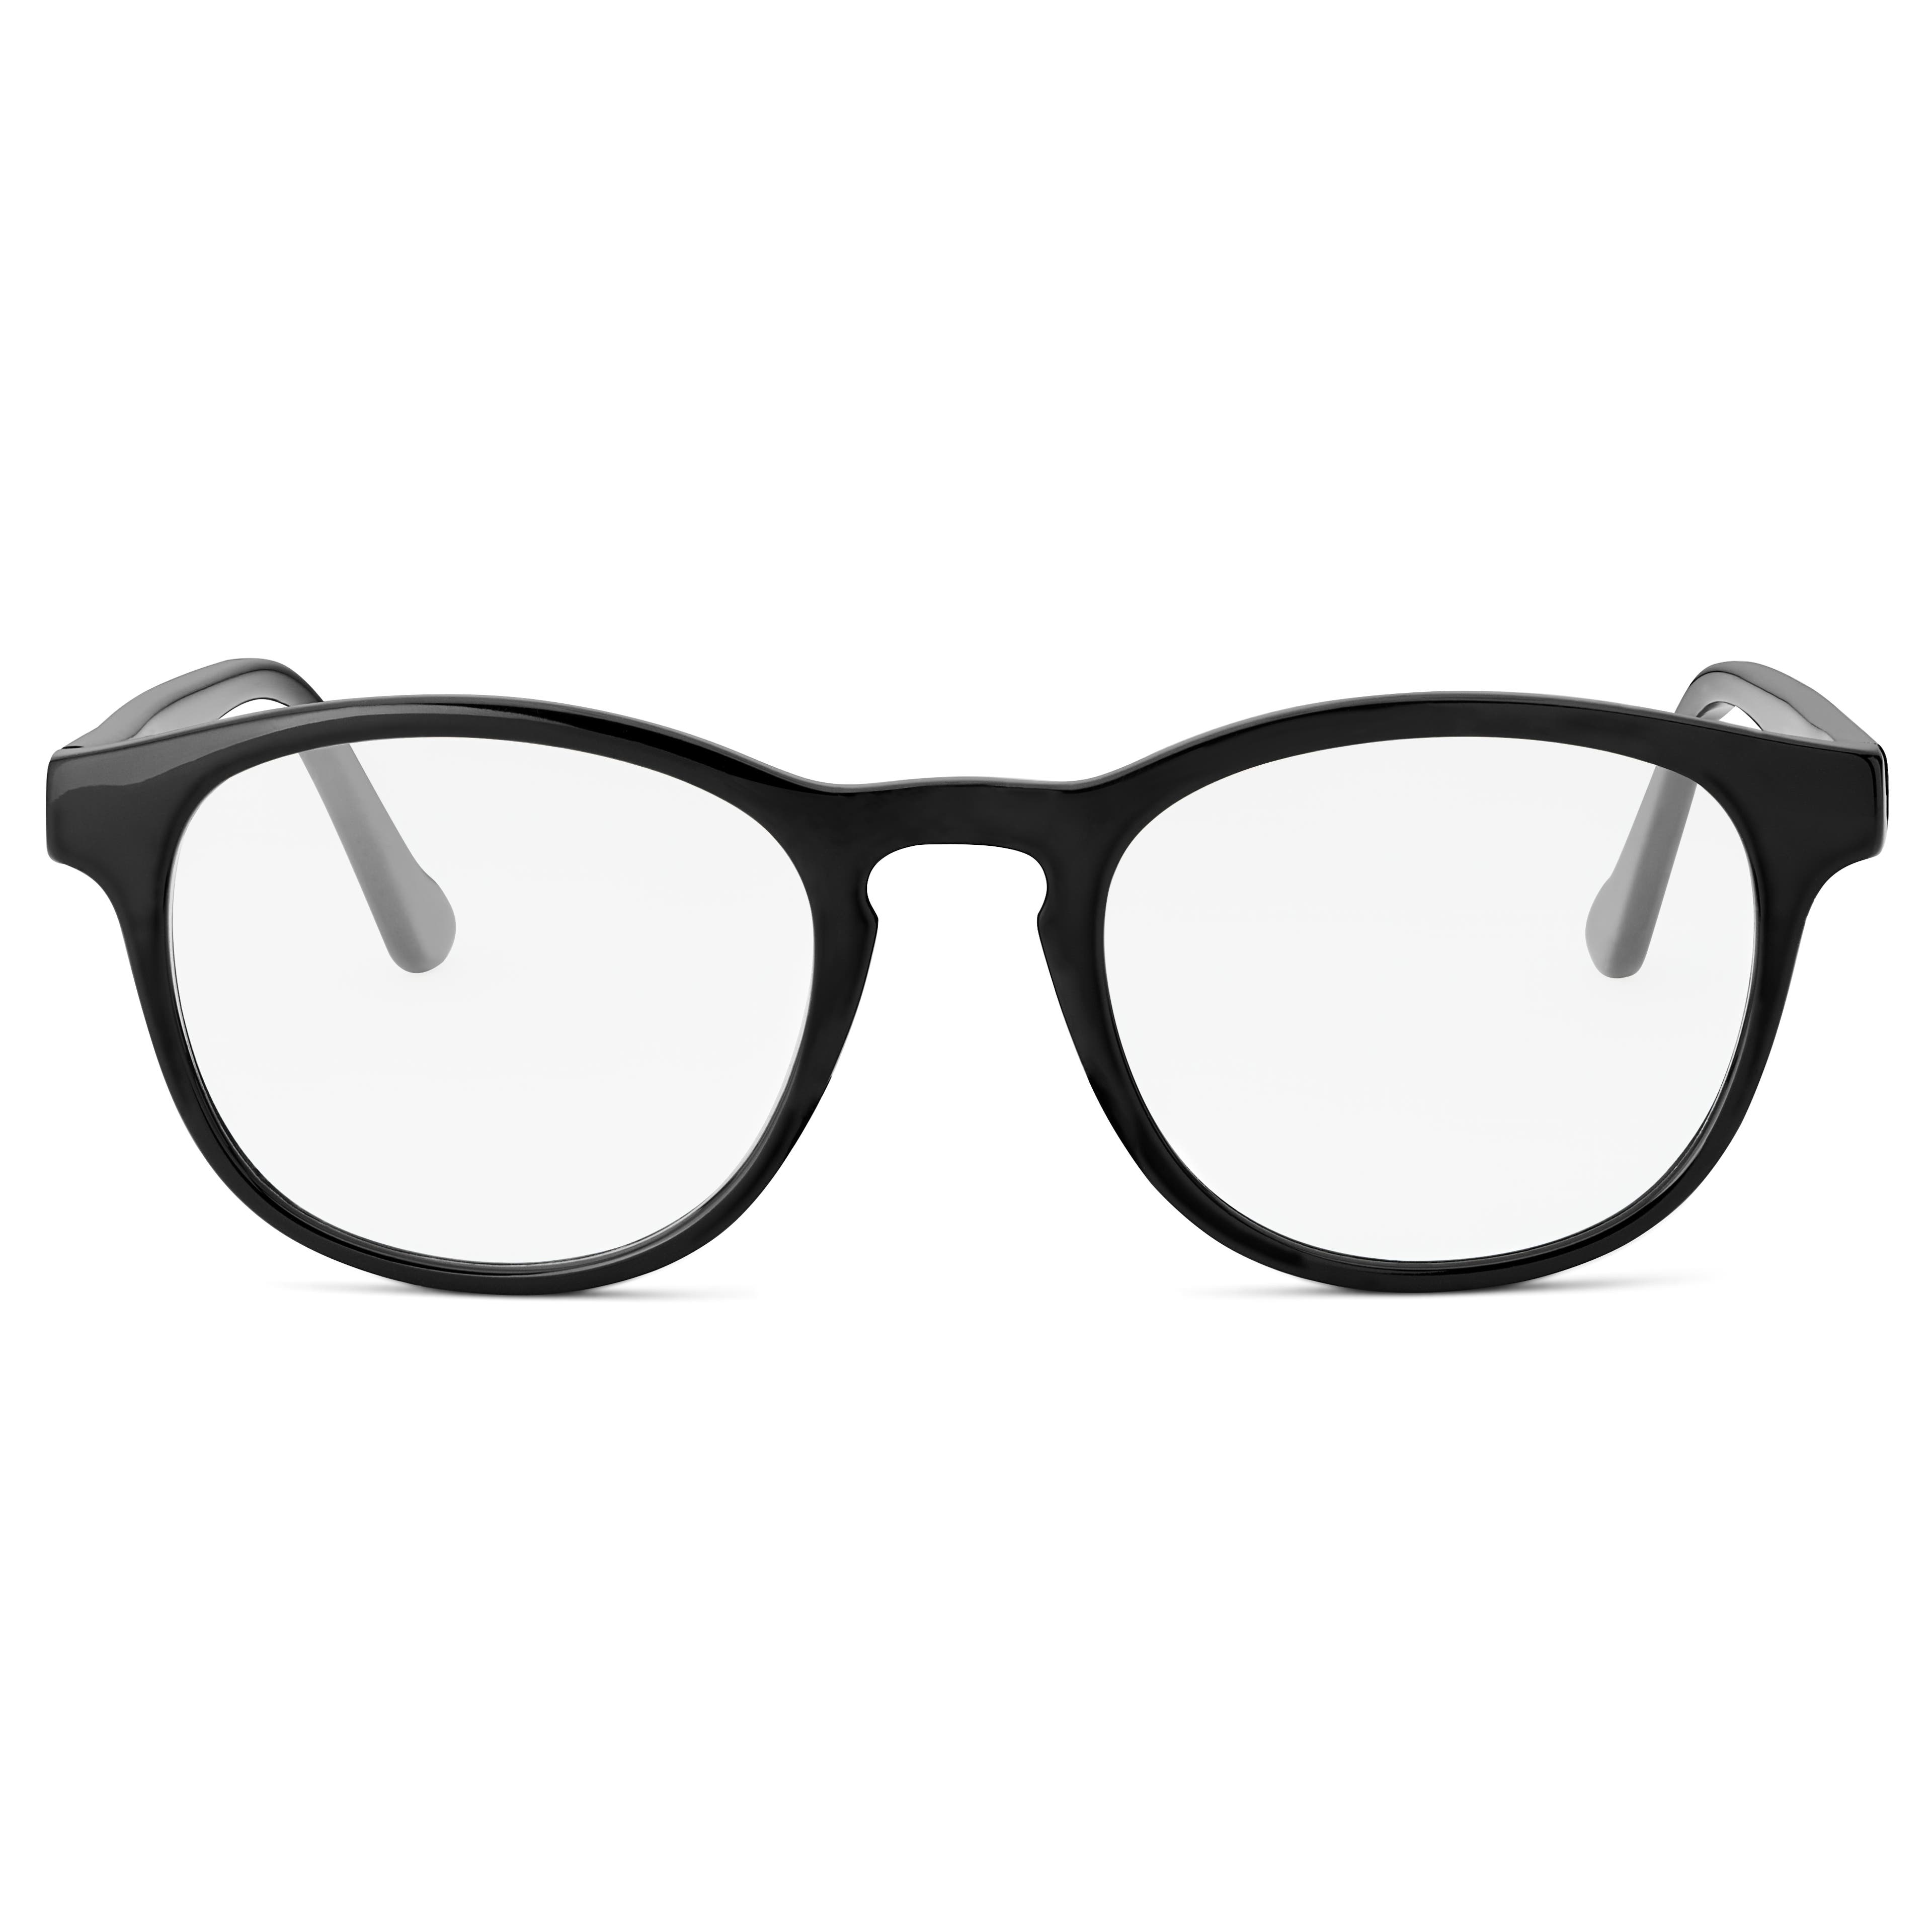 Klasické čierne okuliare s čírymi šošovkami blokujúce modré svetlo